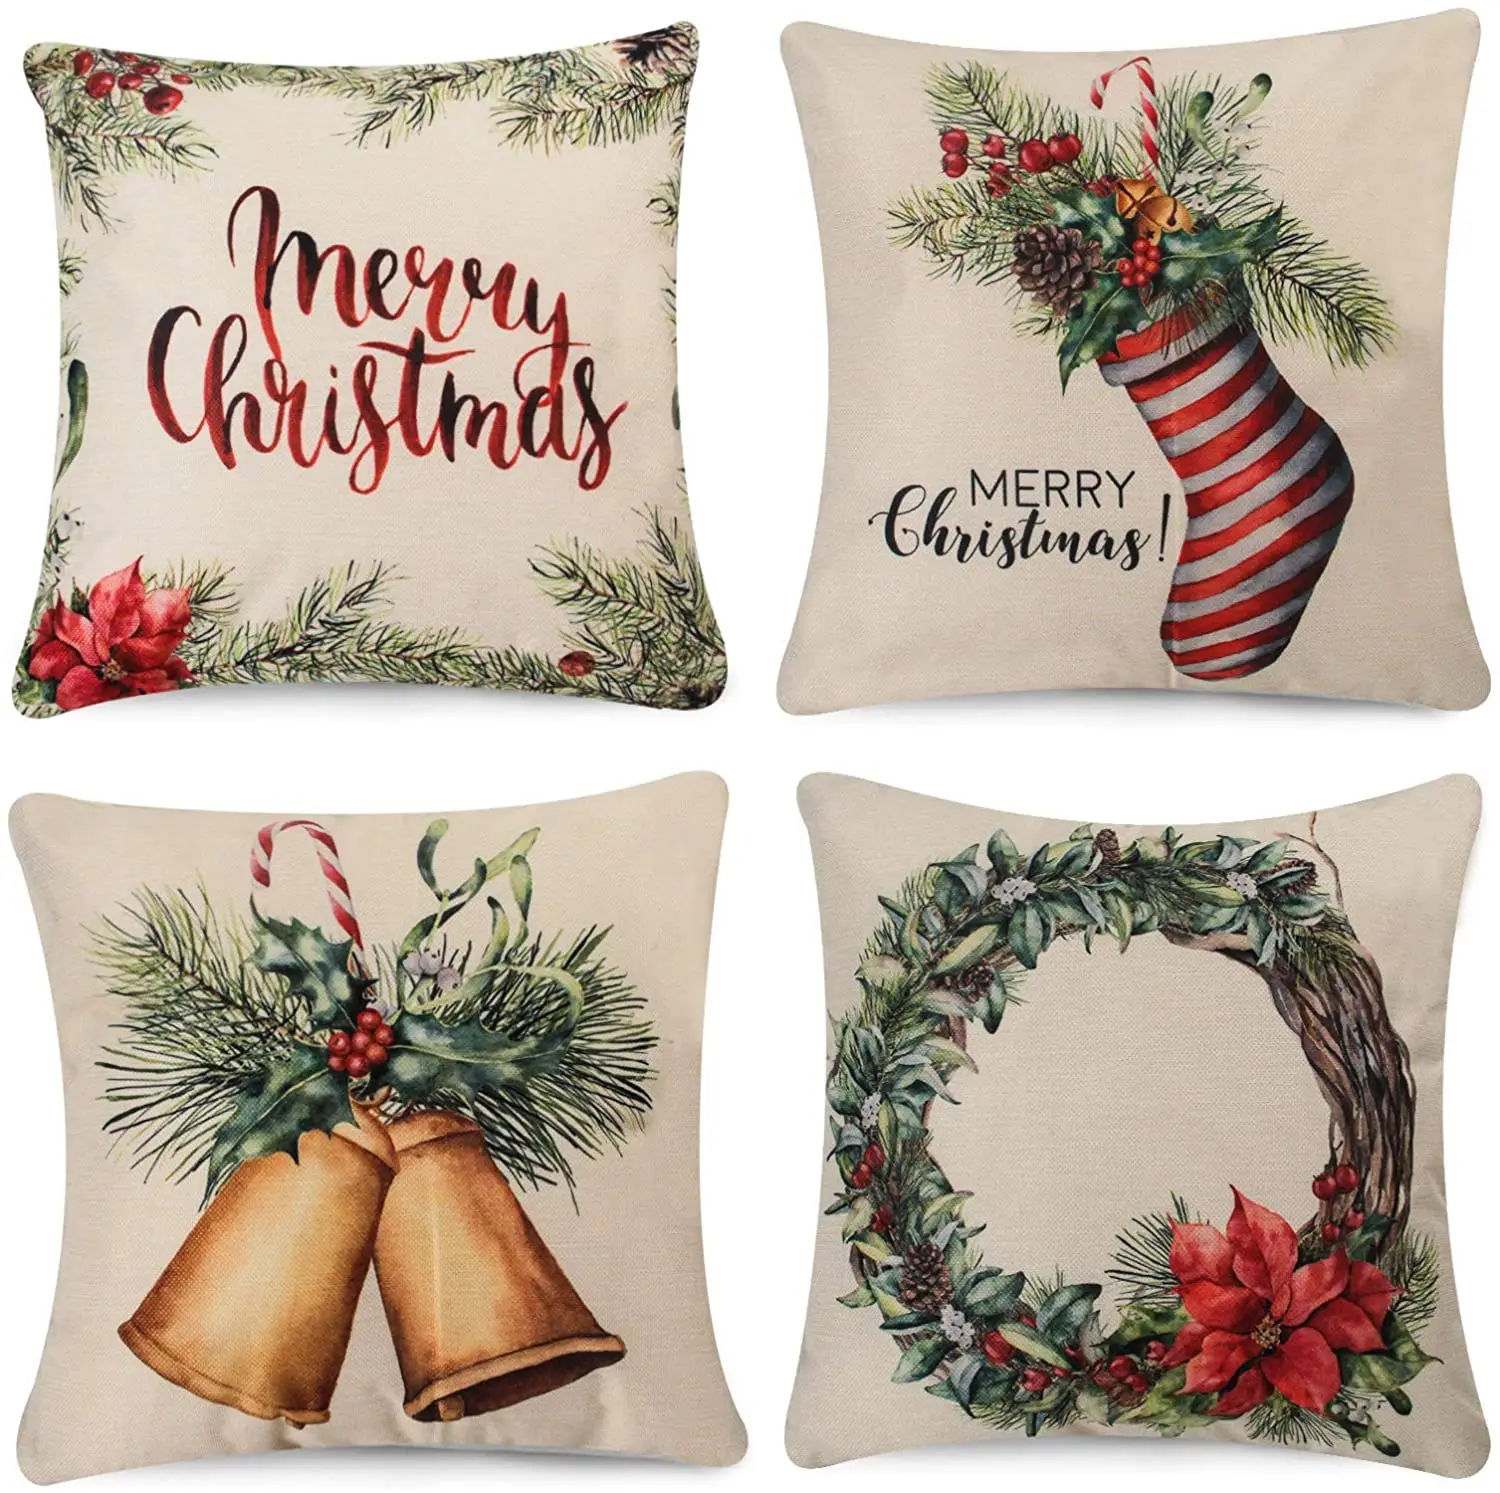 Christmas Xmas Linen Cushion Cover Throw Pillow Case Home Decor Festive Gifts 